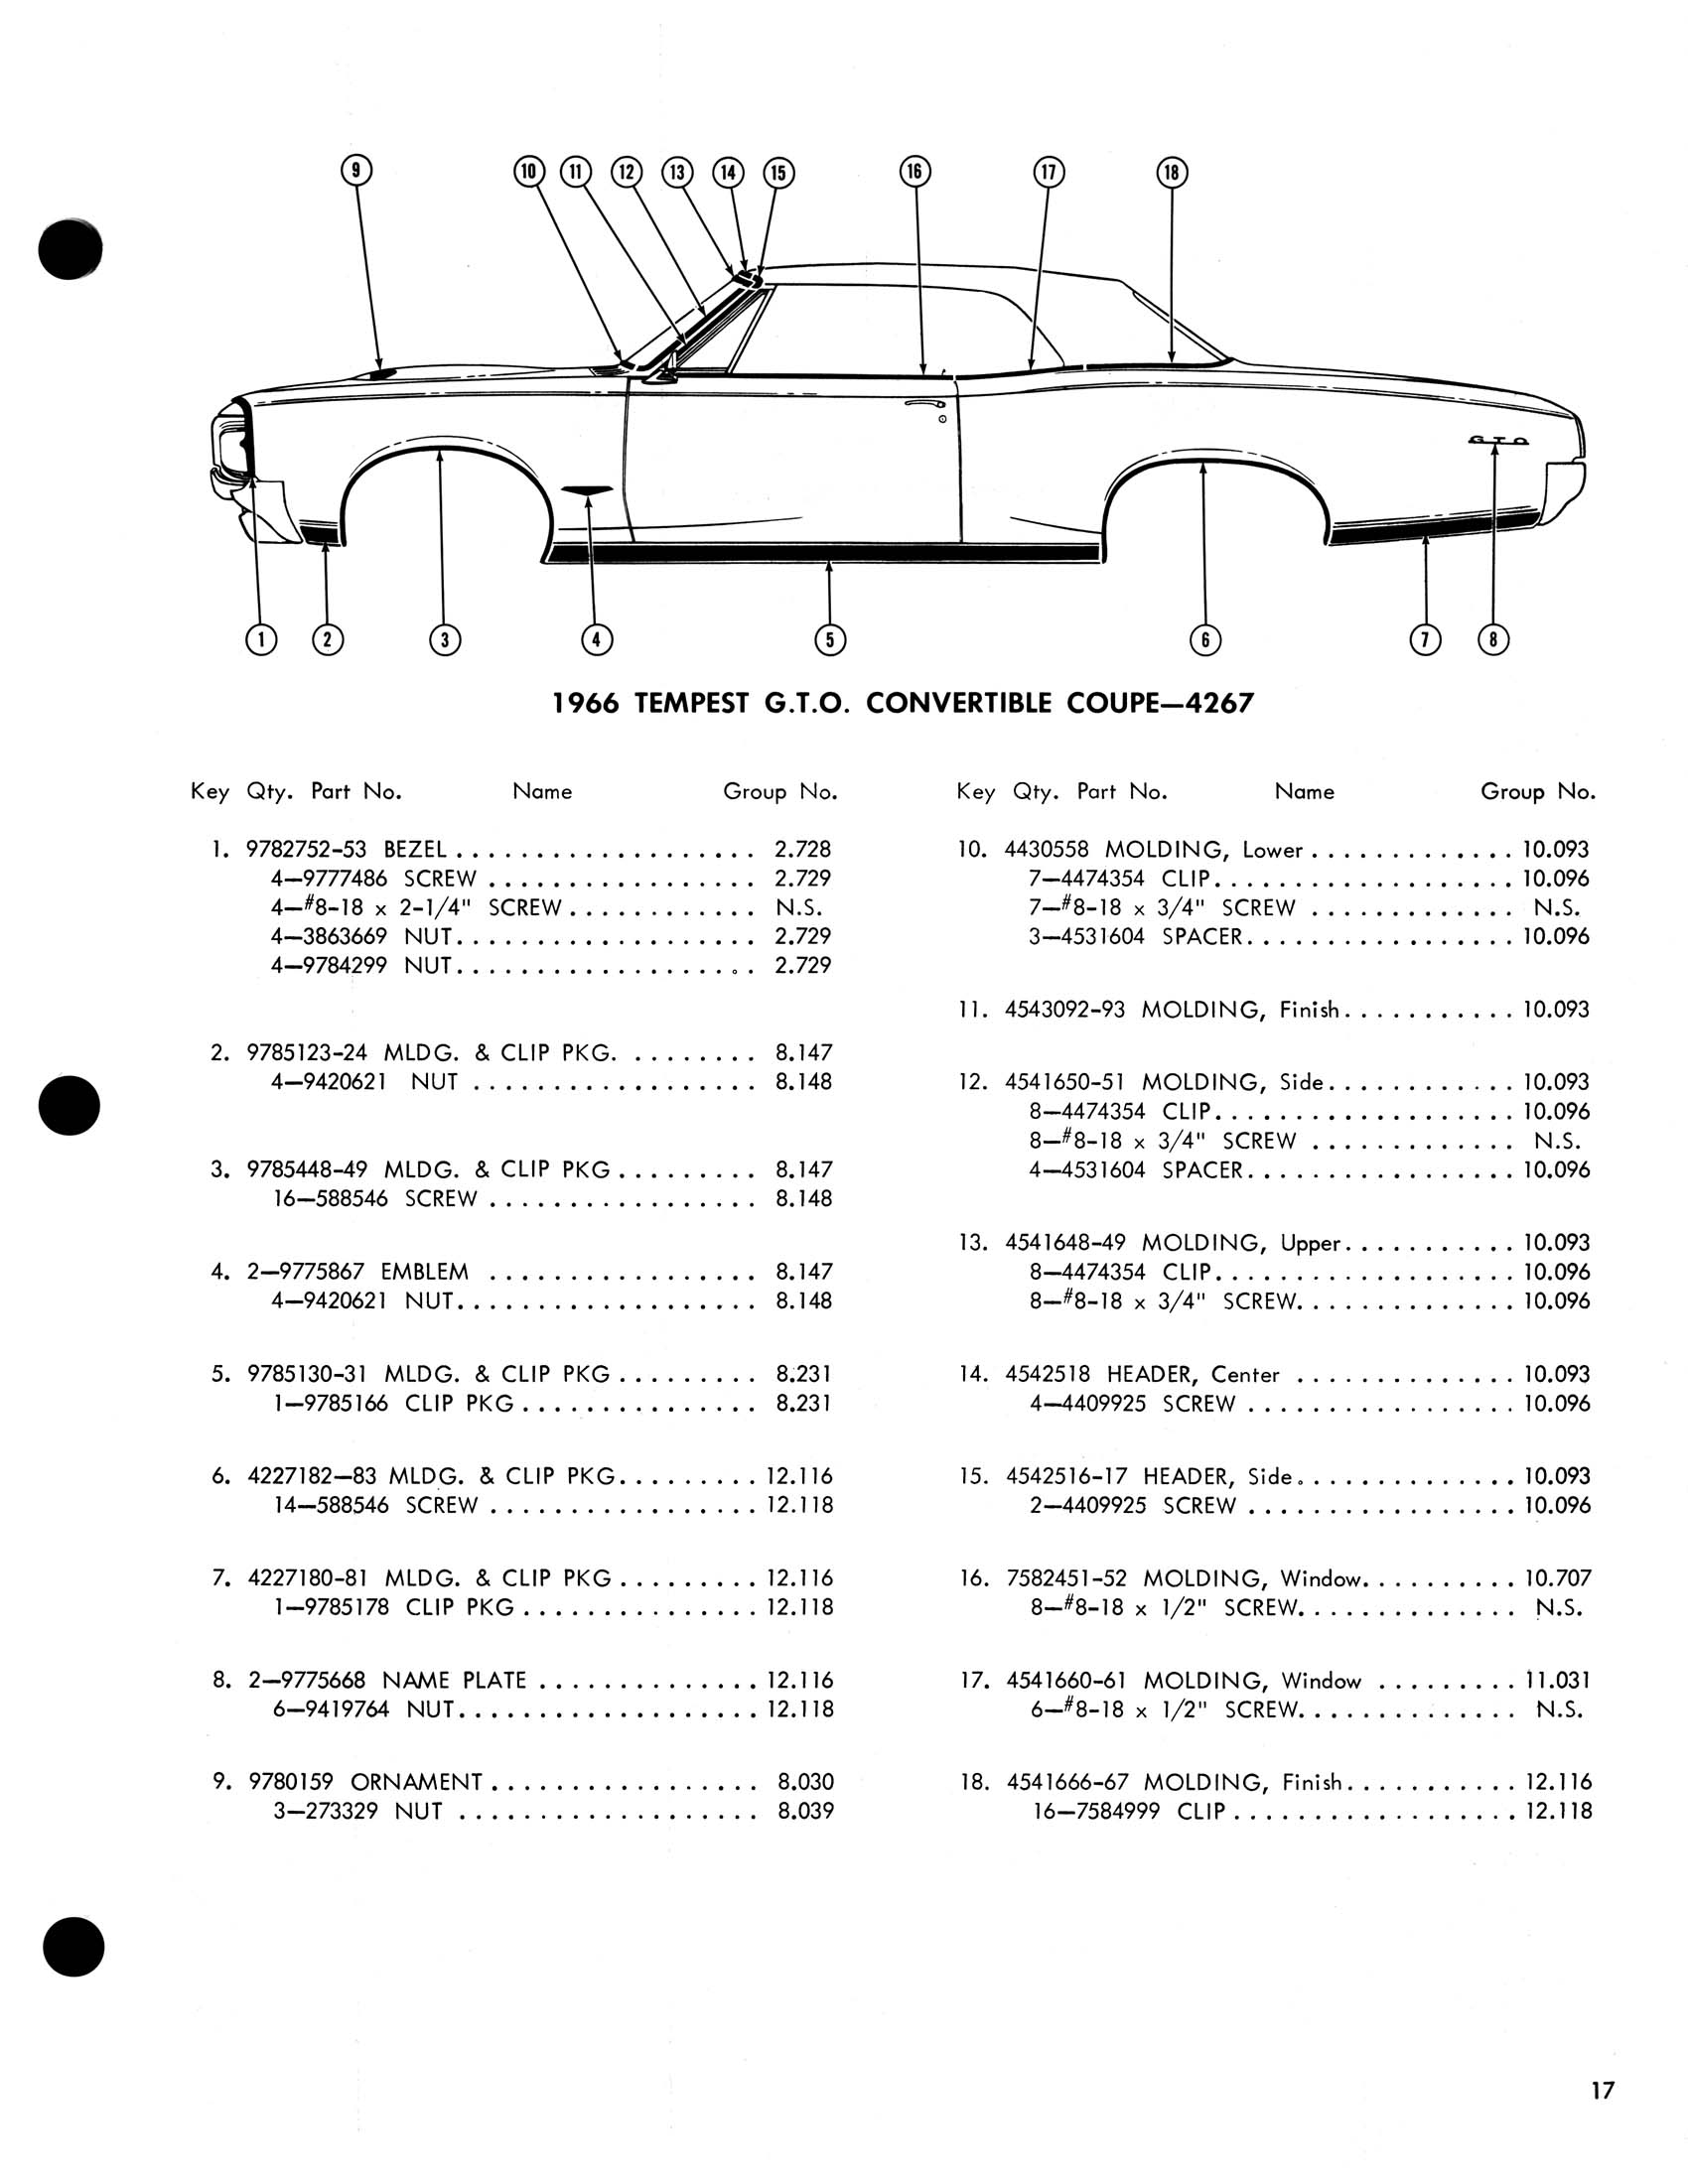 1966_Pontiac_Molding_and_Clip_Catalog-17